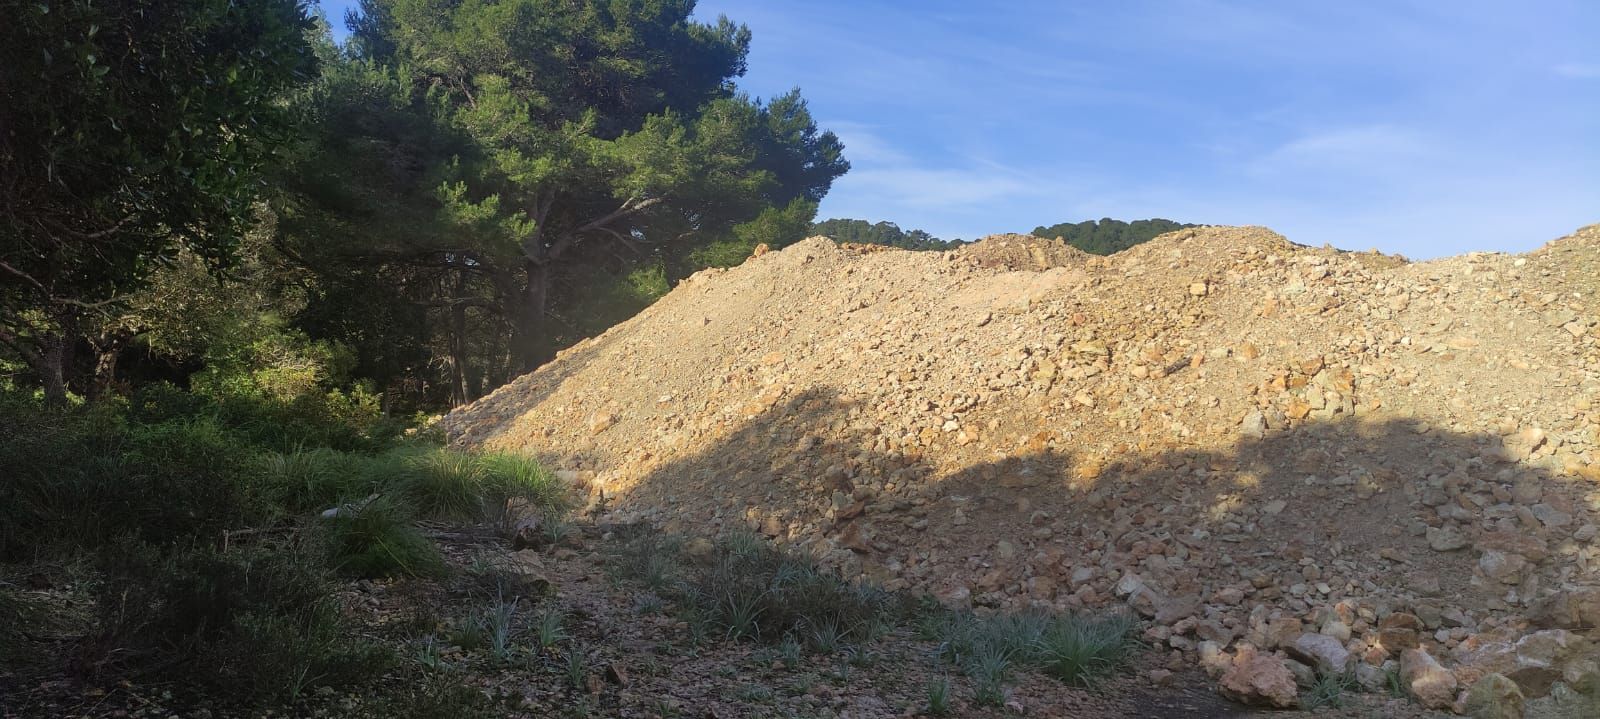 Escombros Formentor